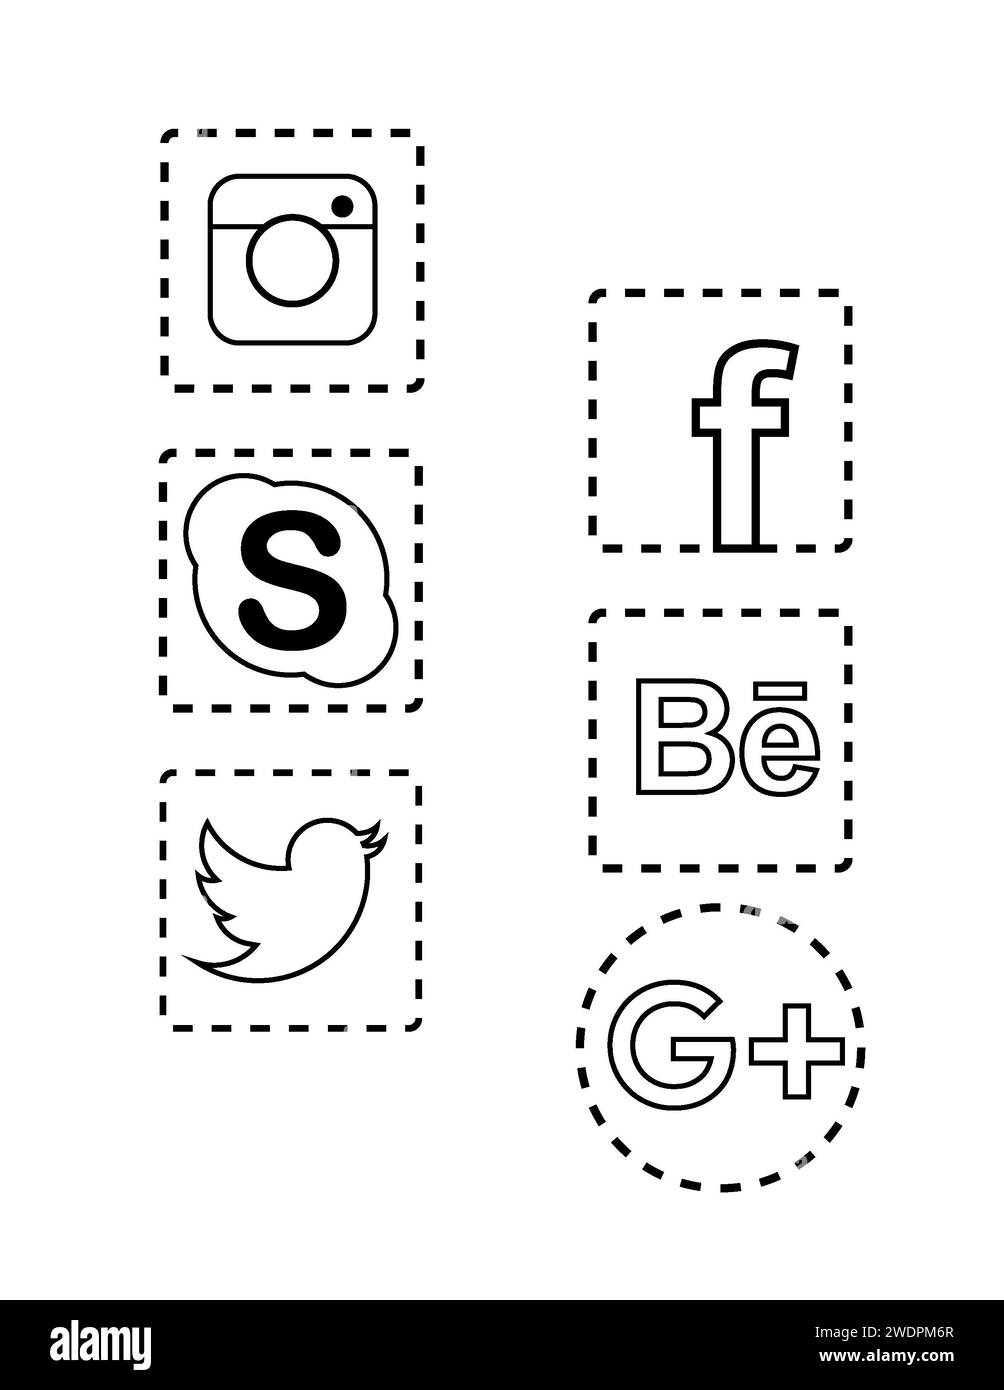 Symbole populärer sozialer Medien. Stockfoto